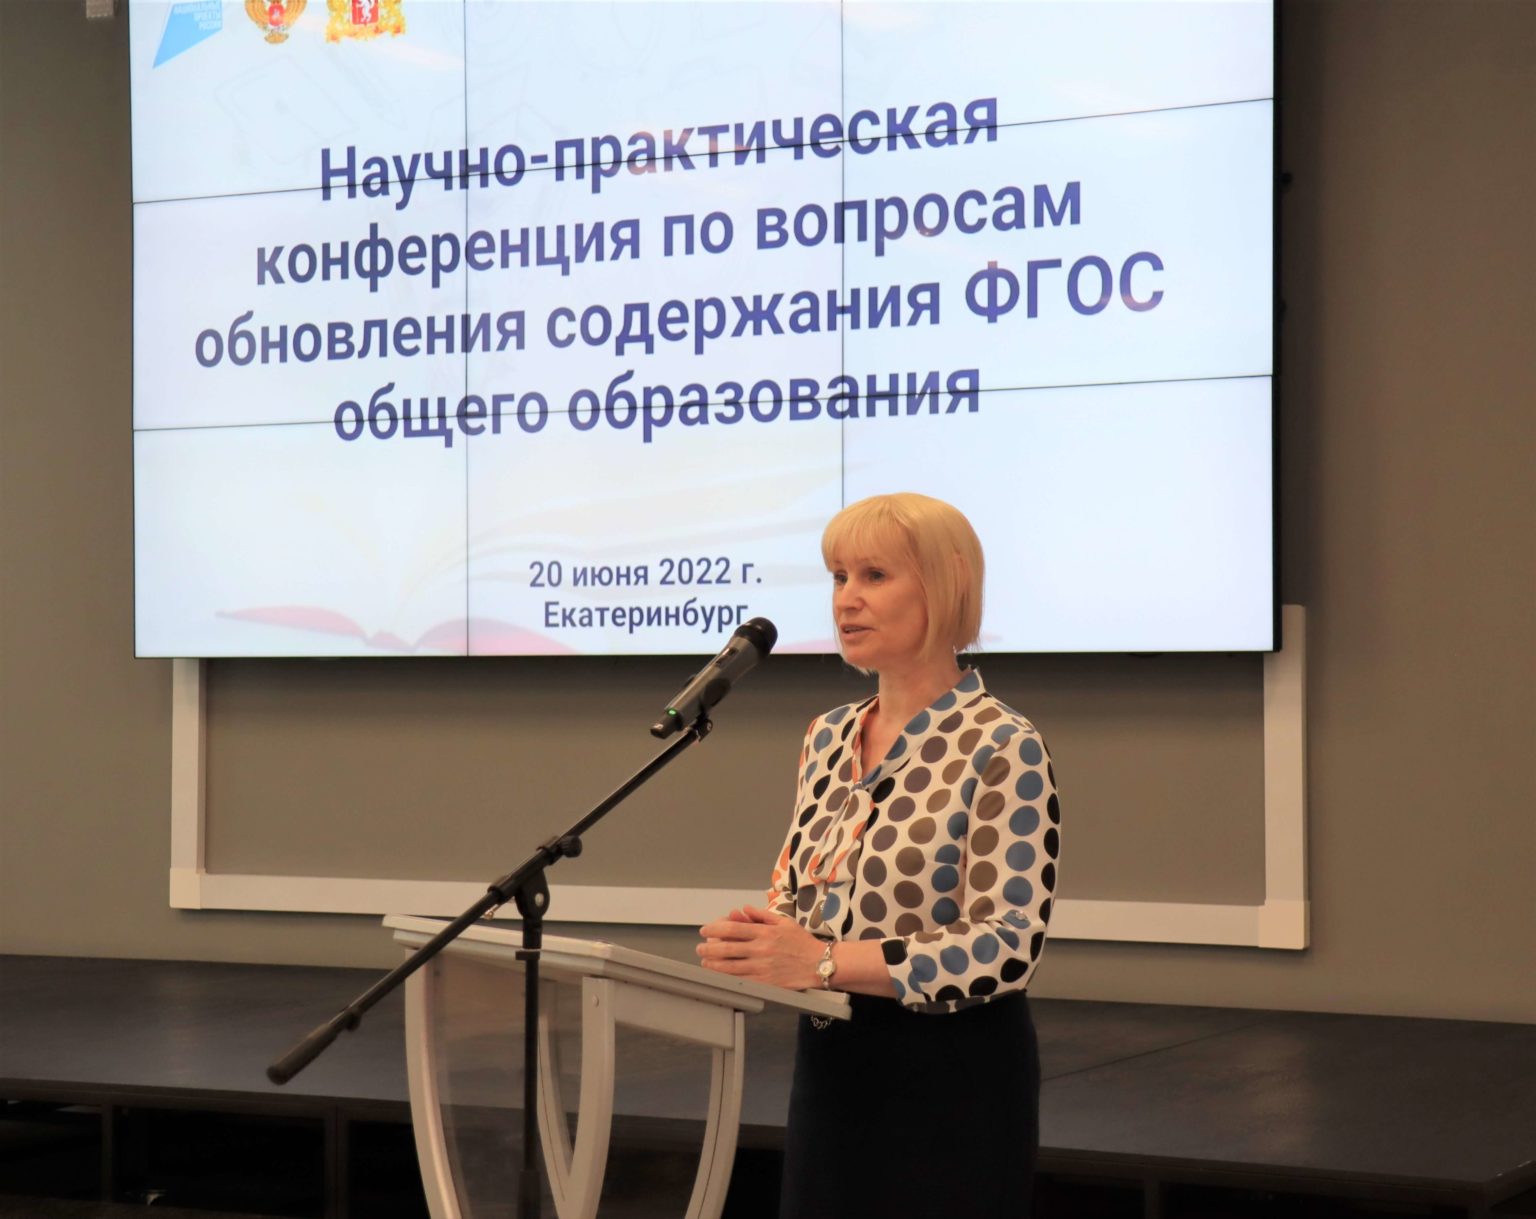 В УрГПУ состоялась научно-практическая конференция для педагогов по вопросам обновления содержания ФГОС общего образования